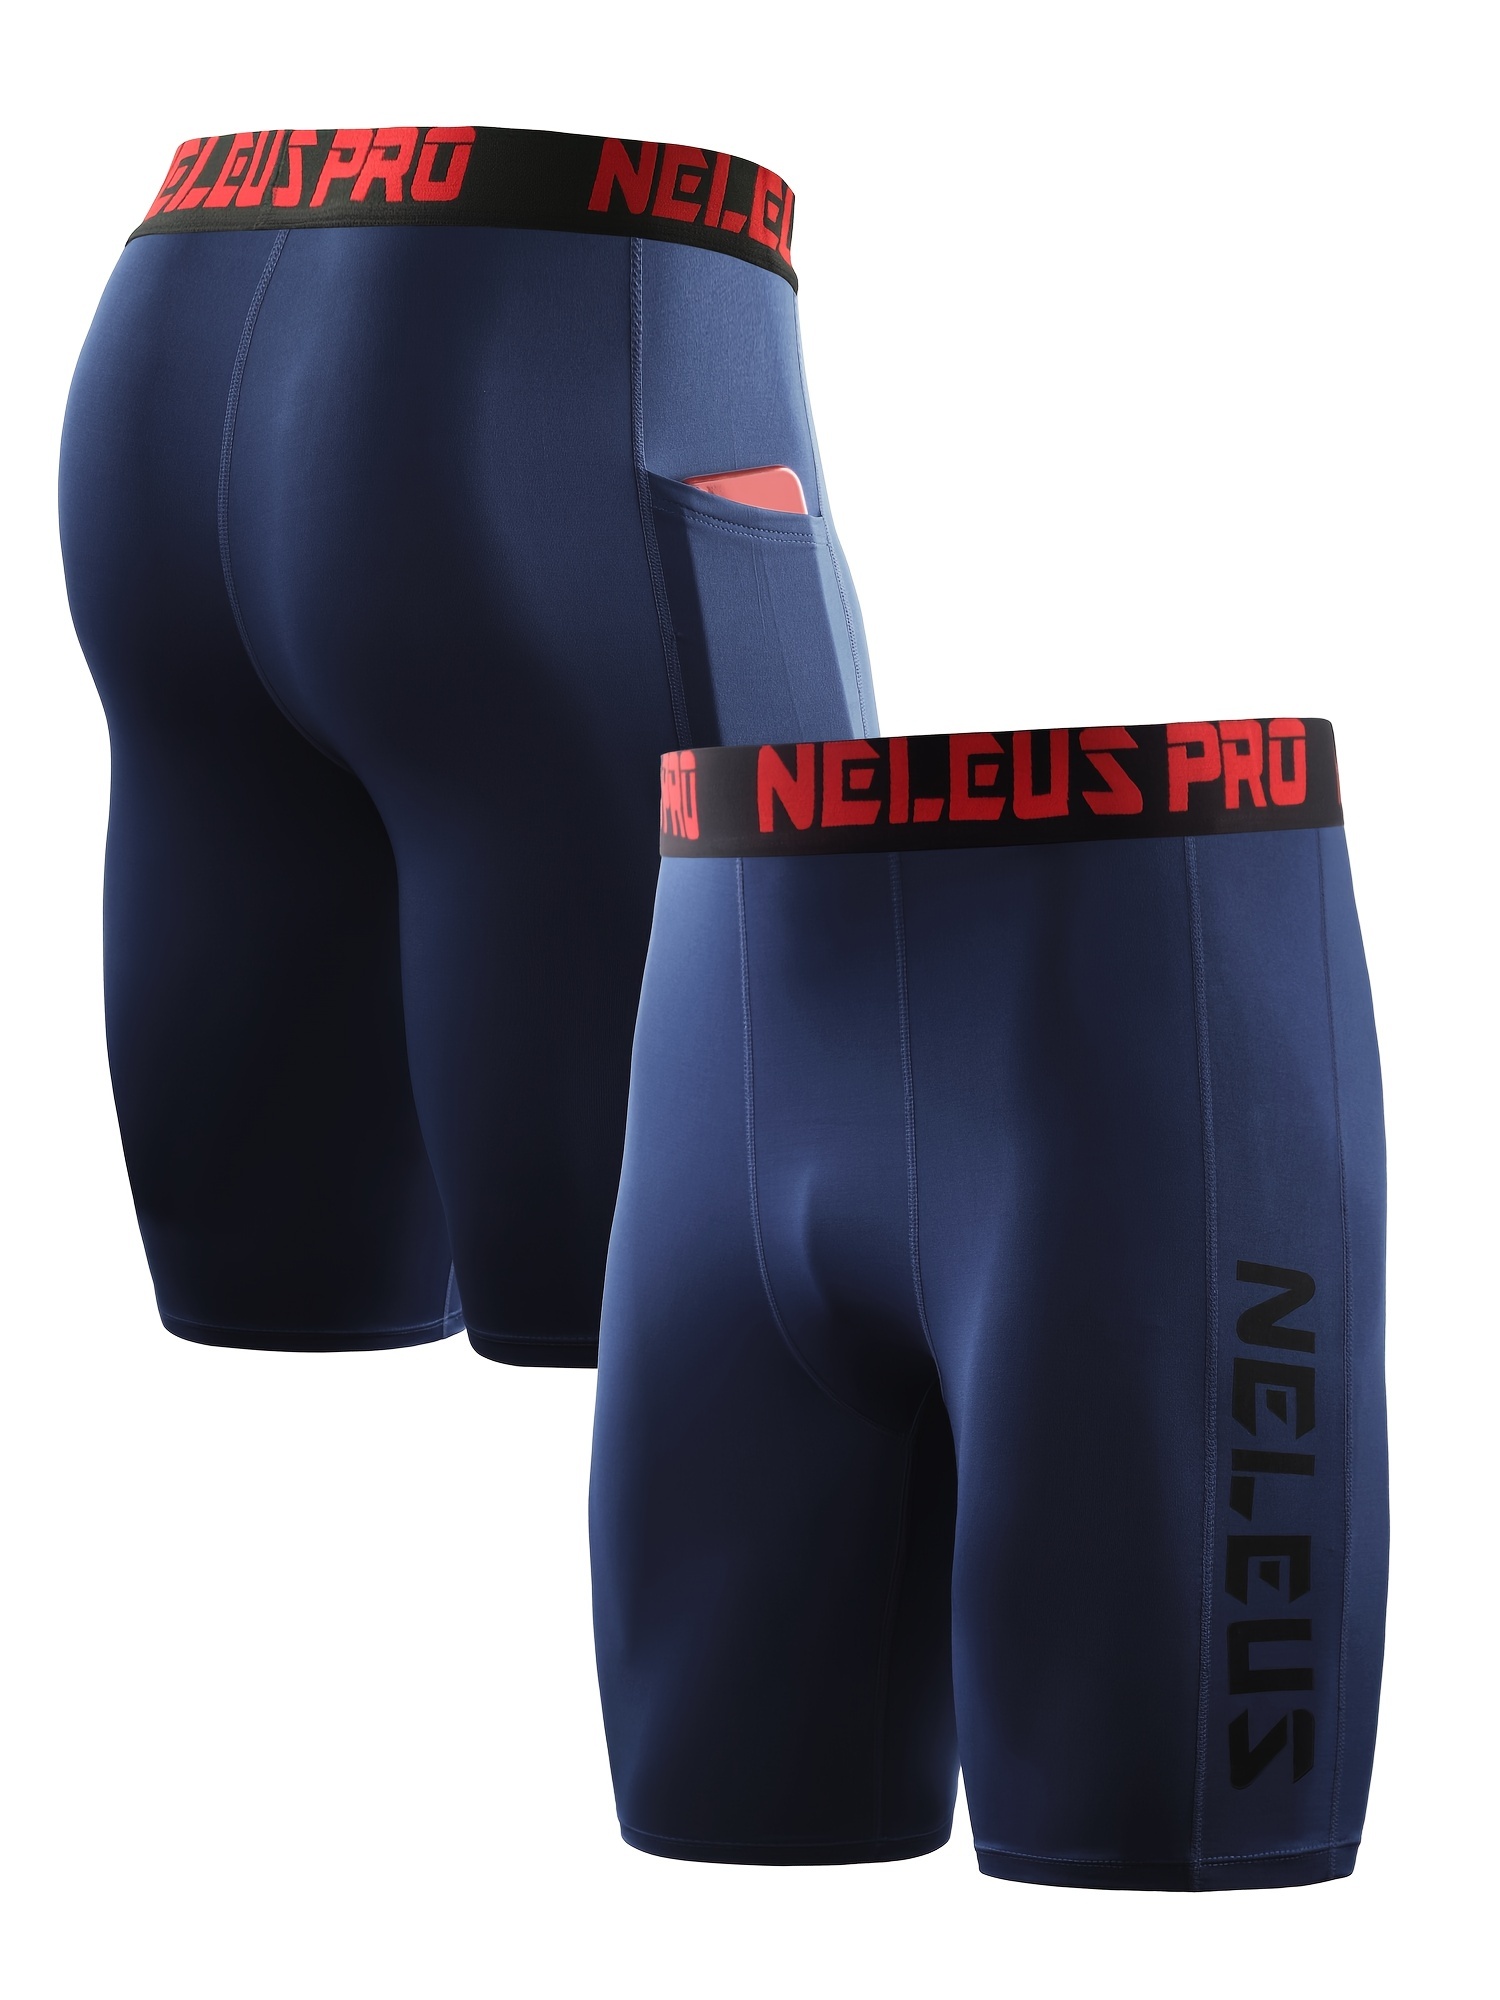 NELEUS Men's Performance Compression Shorts Athletic Workout